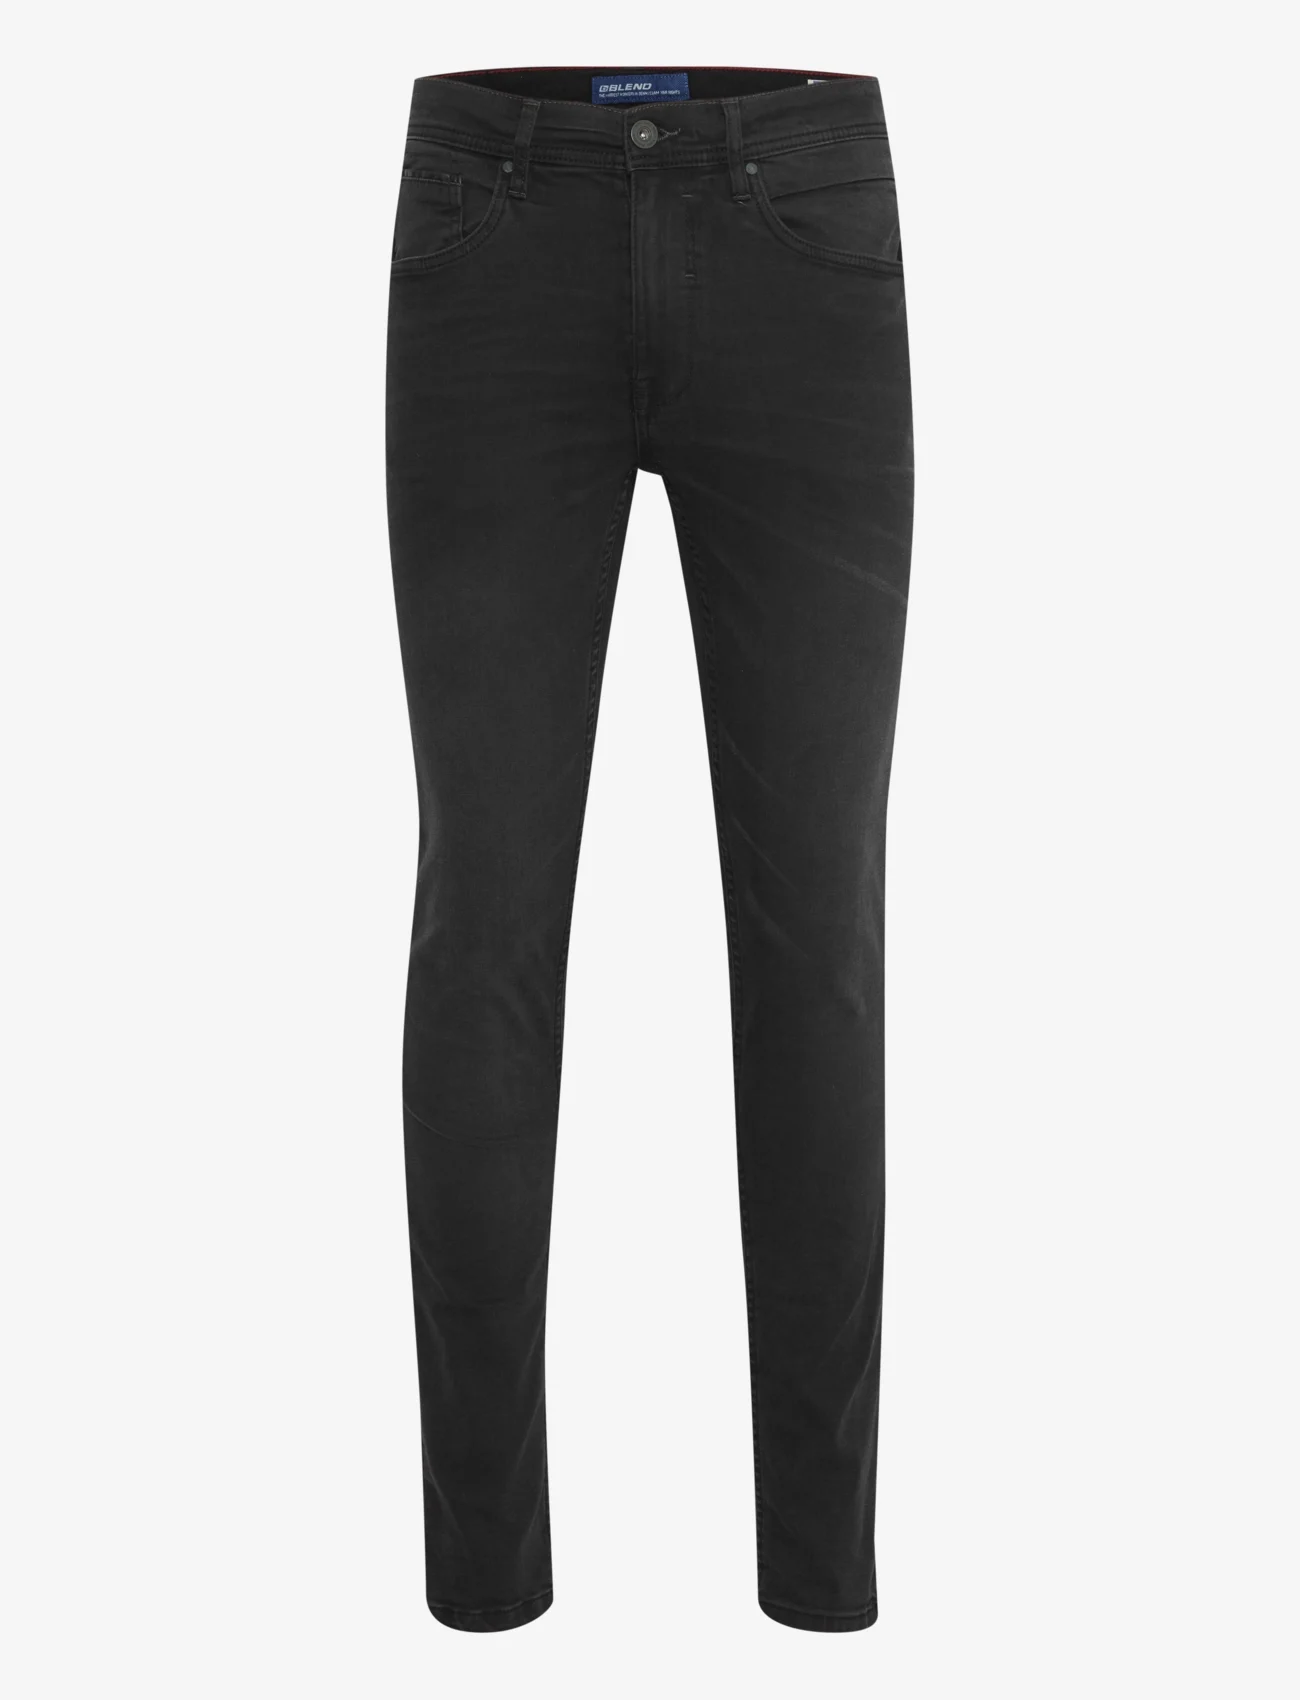 Blend - Jet fit - NOOS - slim fit jeans - denim black - 1